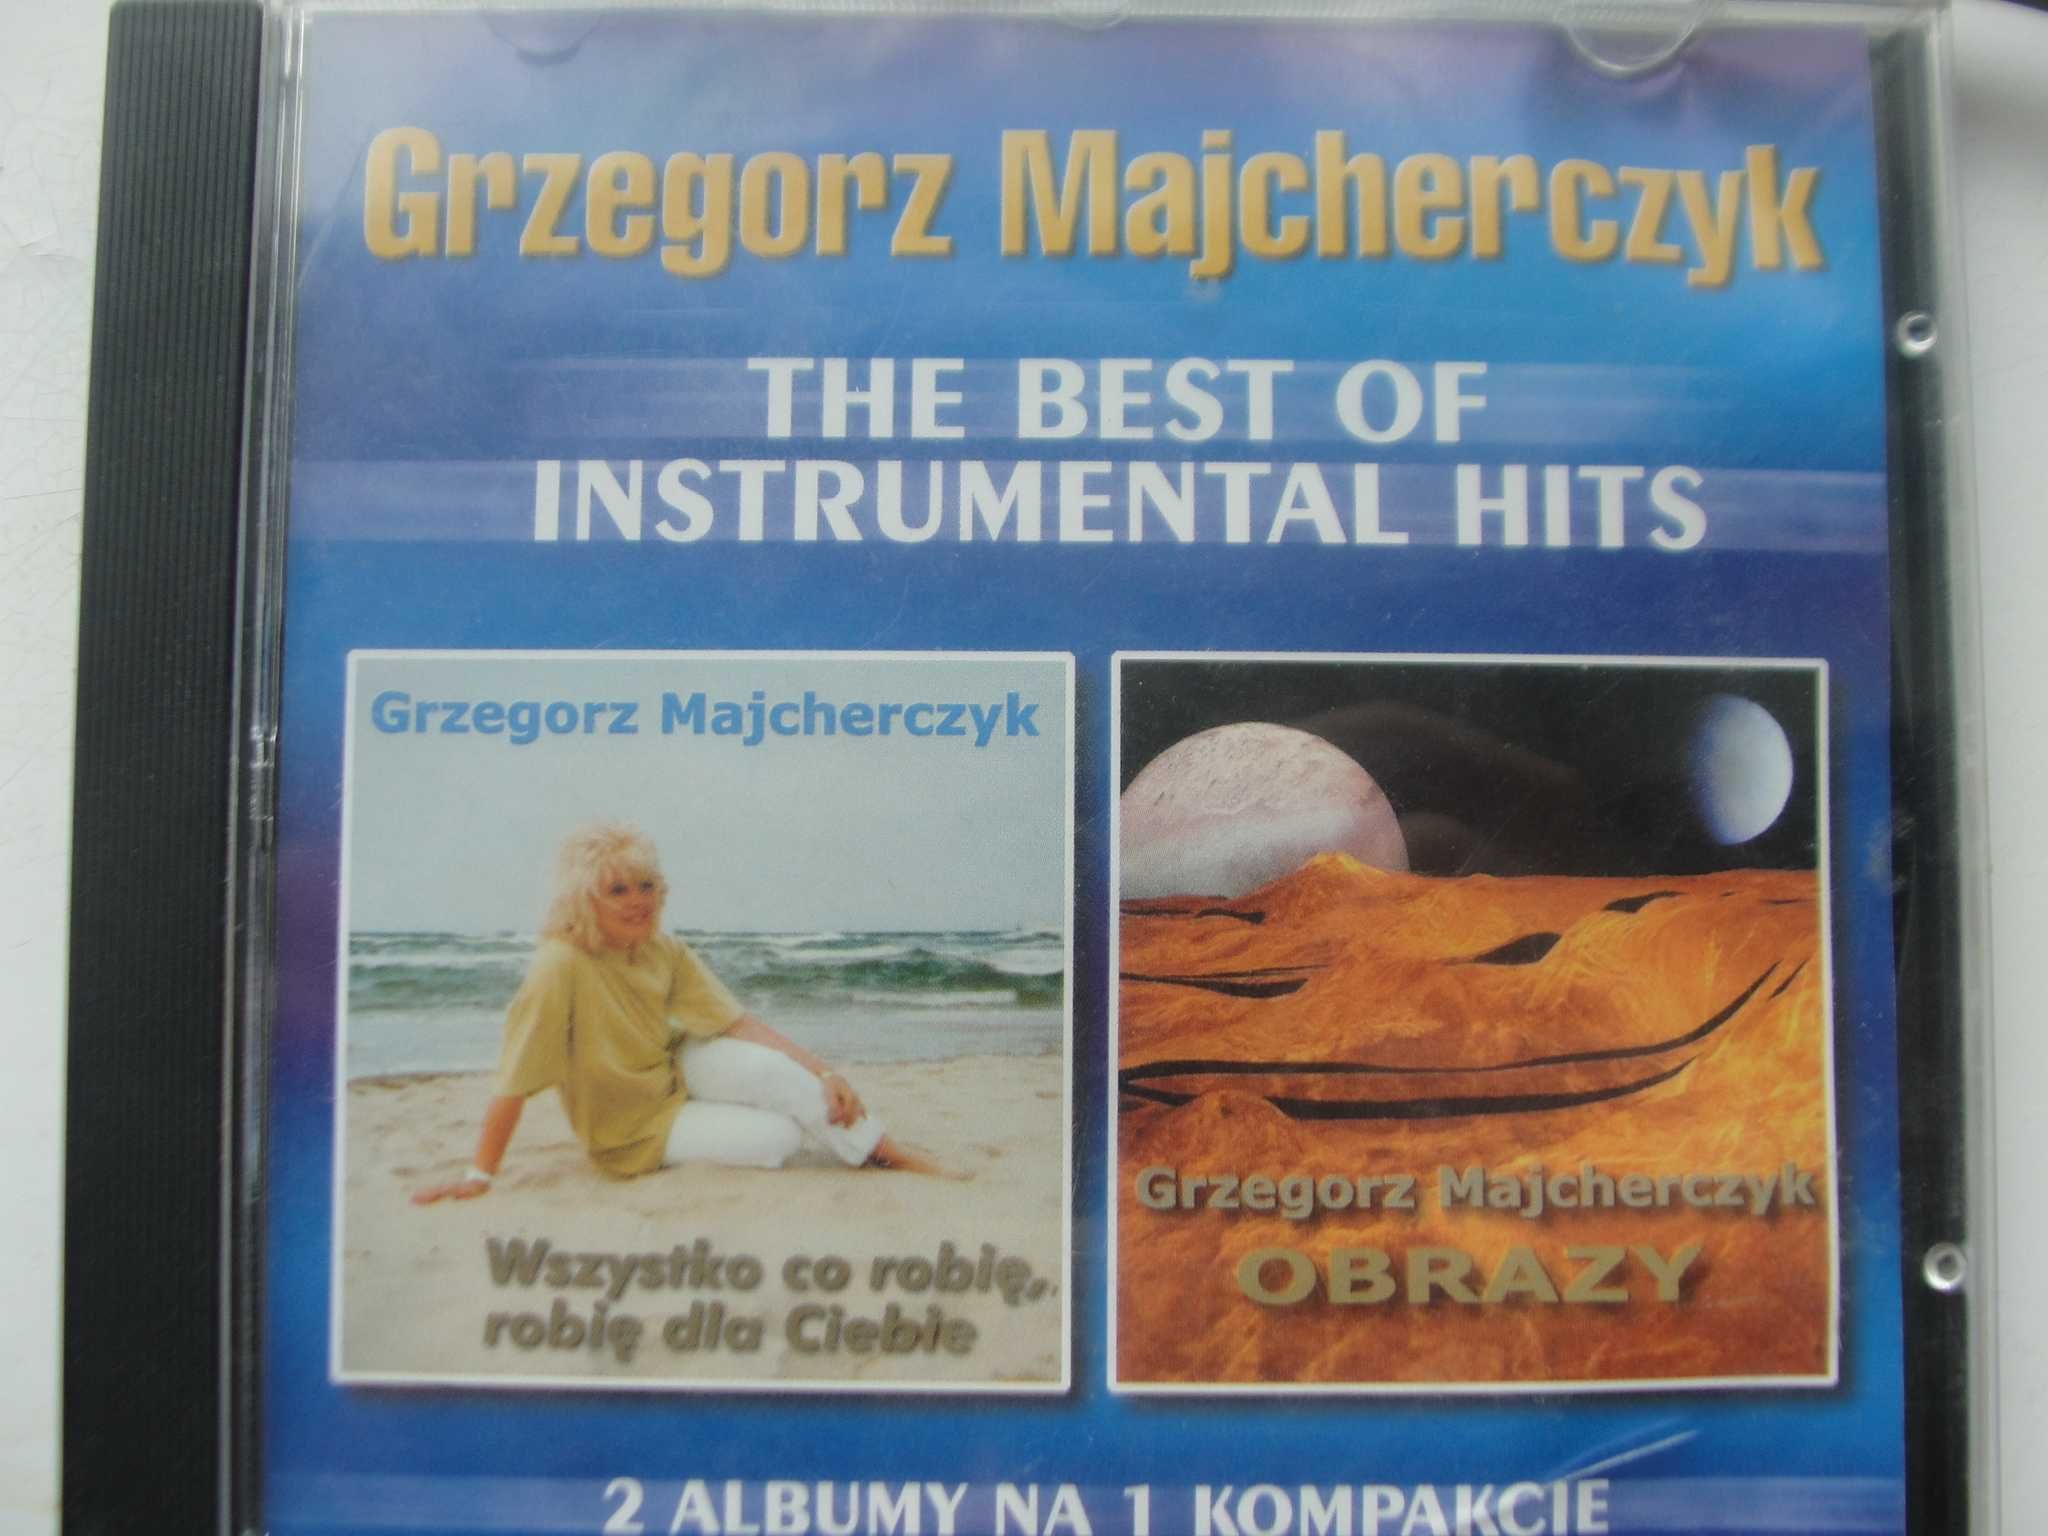 Grzegorz Majcherczyk  The best of instrumental hits album 2 CD Polecam